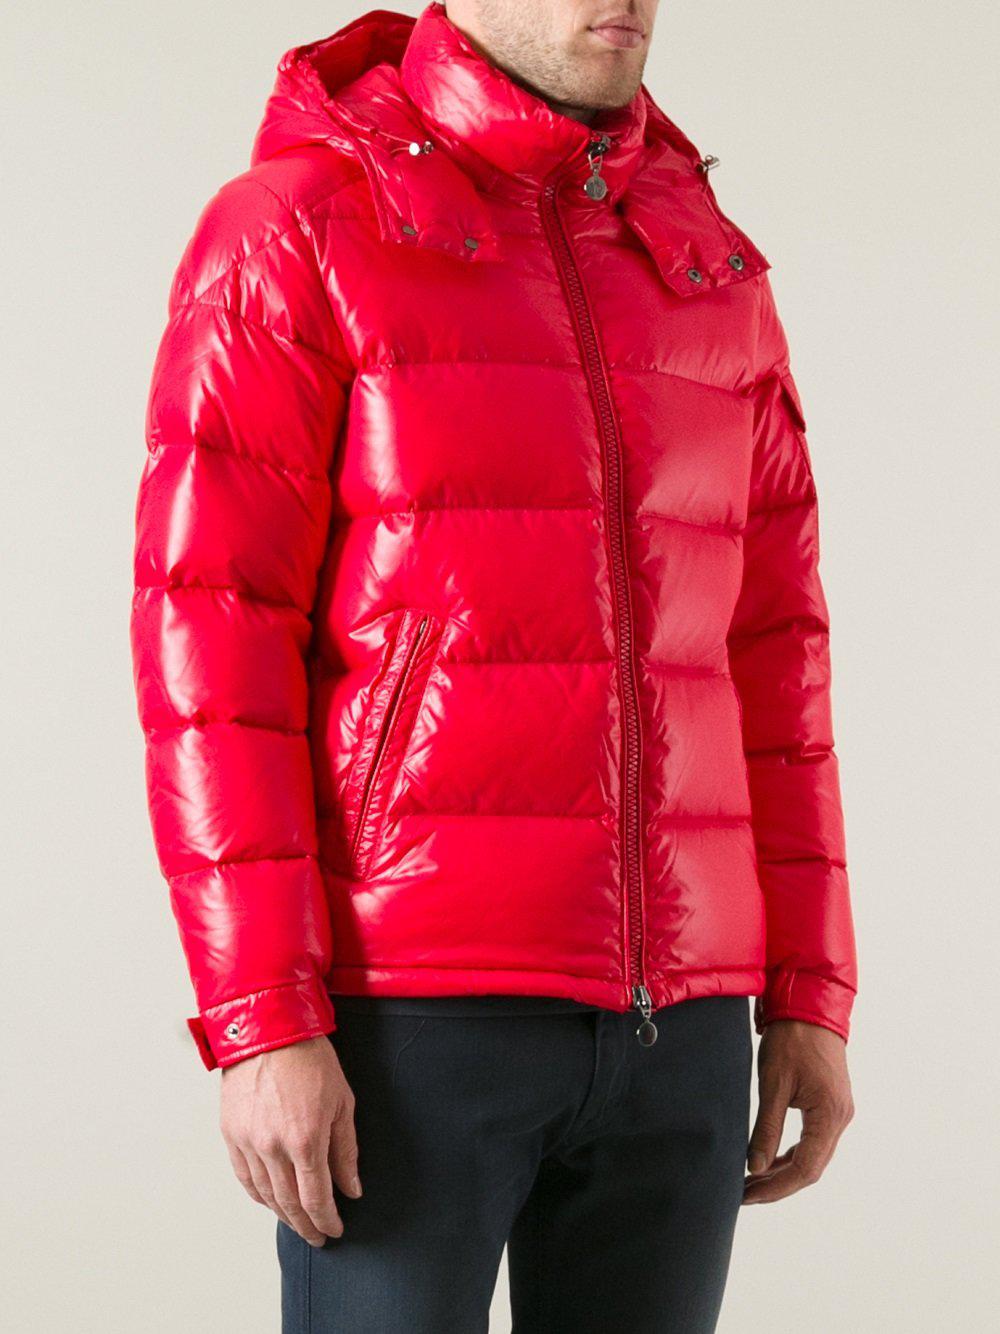 moncler jacket red mens